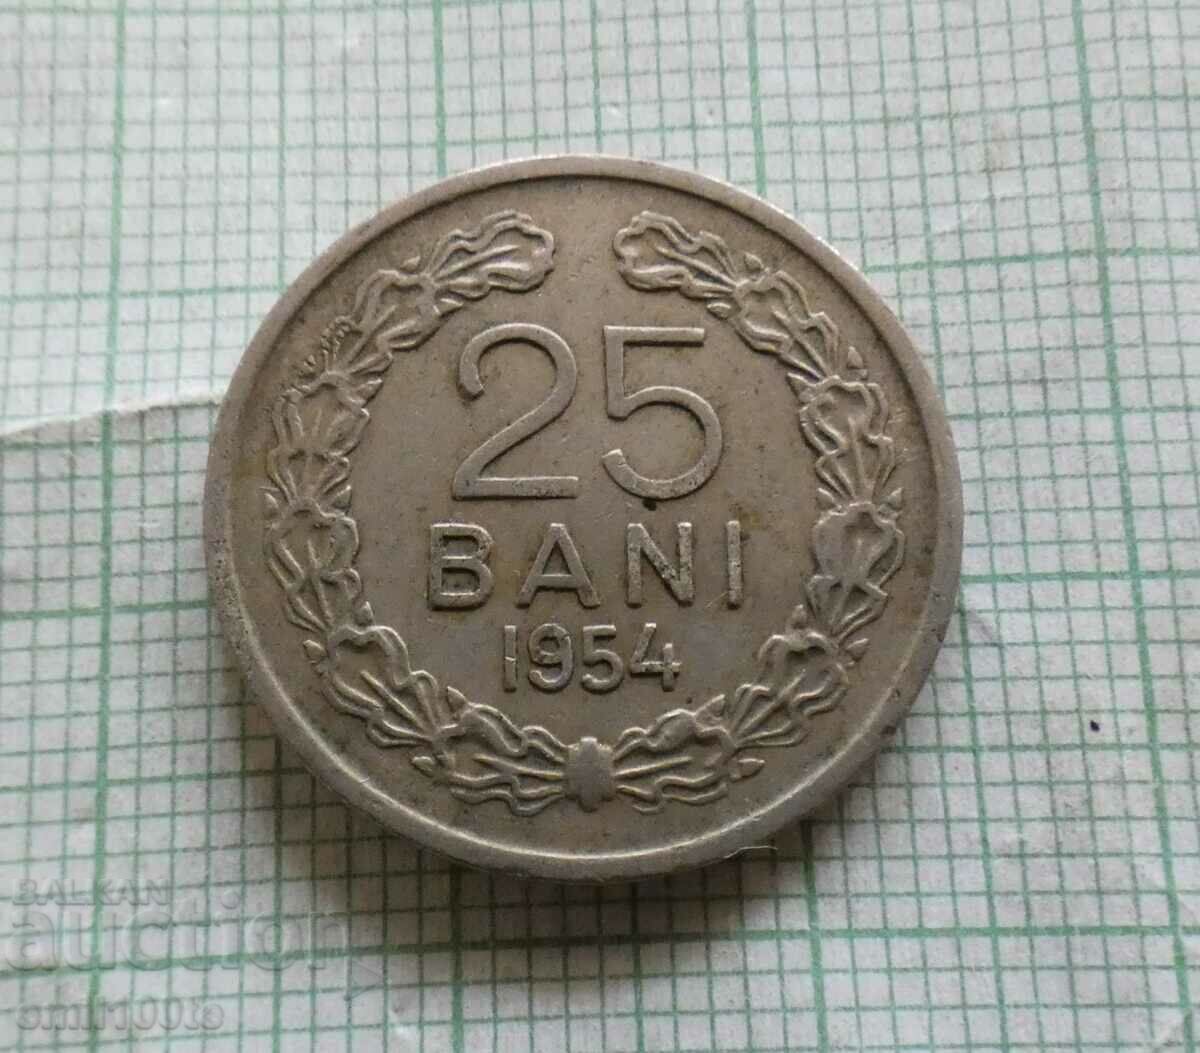 25 Λουτρά 1954 Ρουμανία